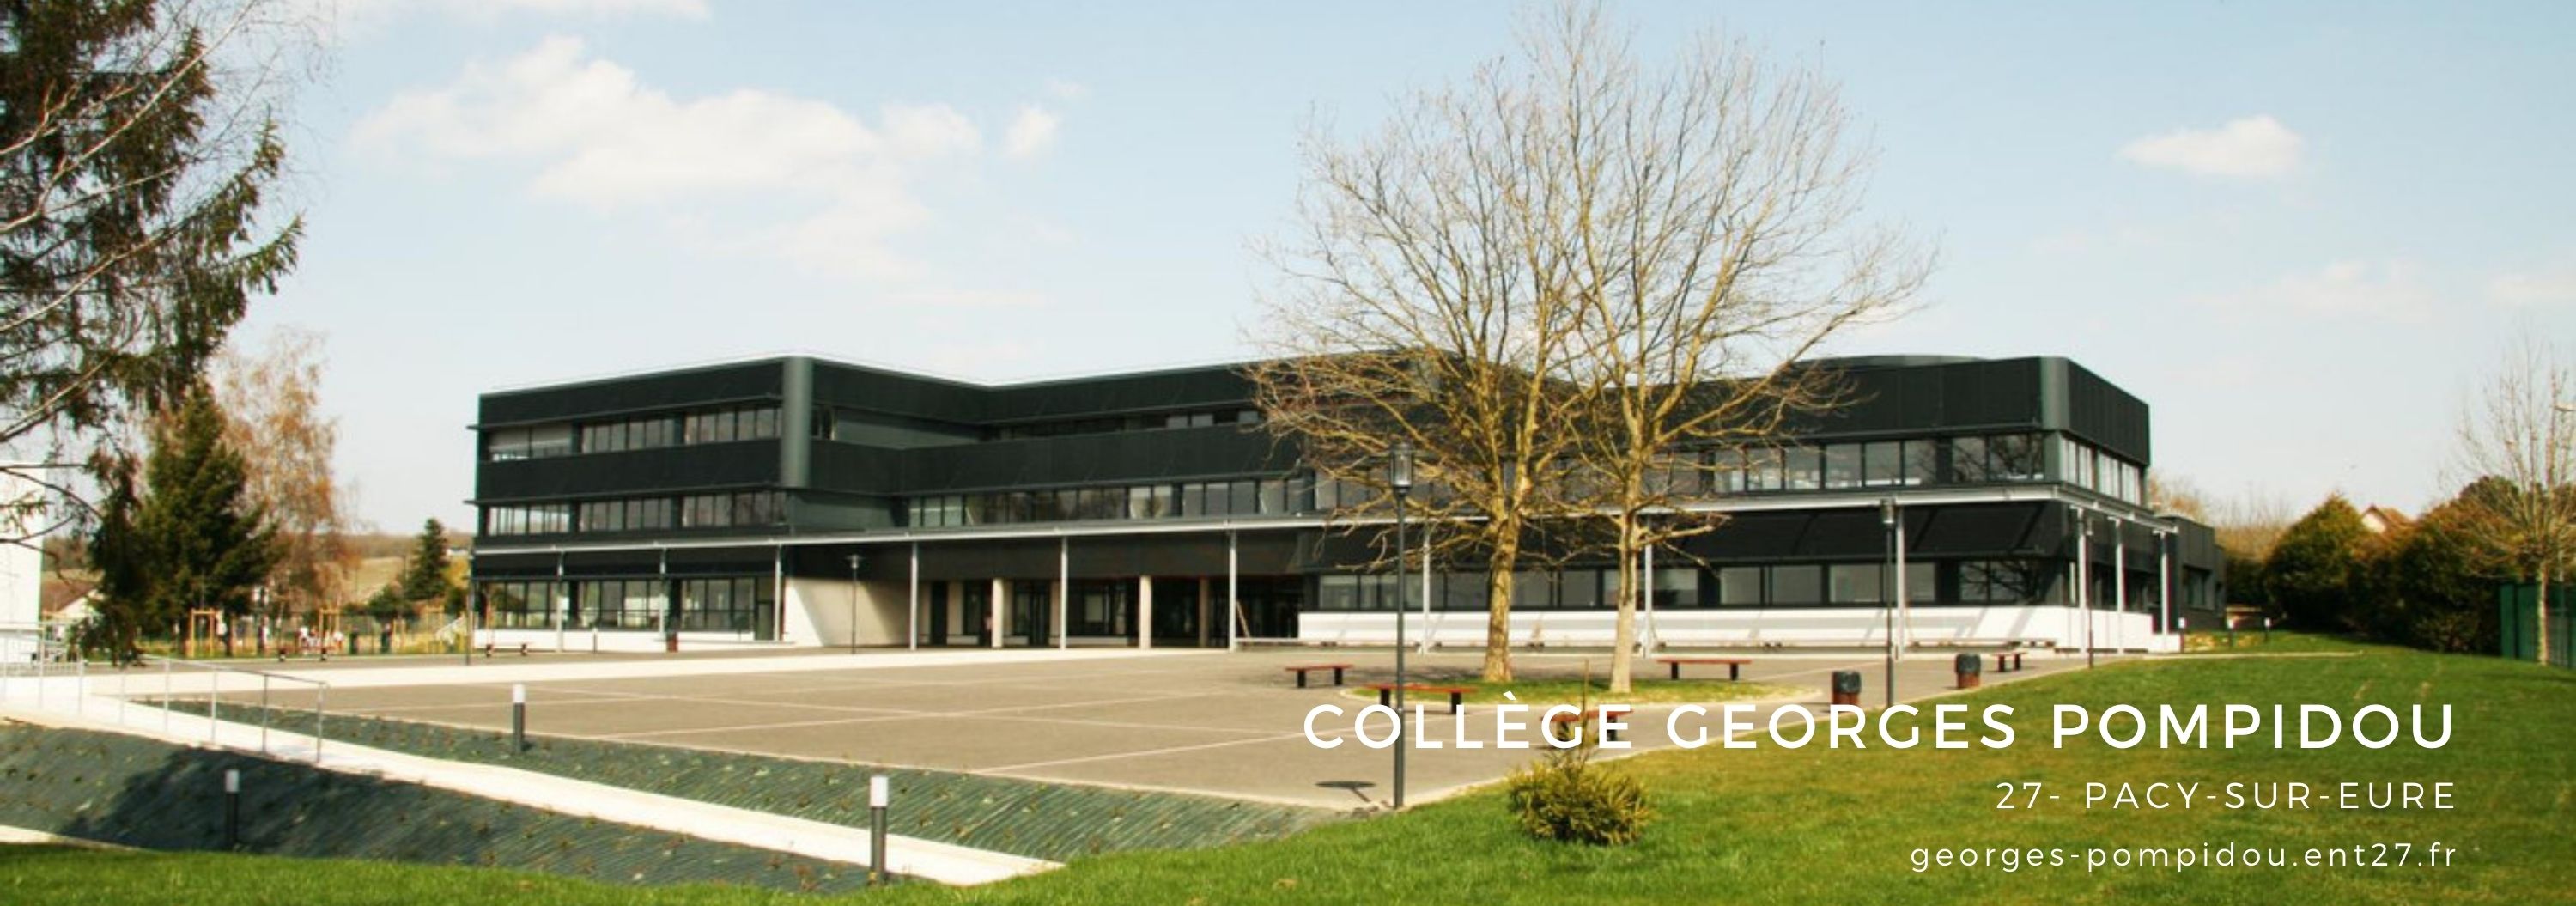 Bannière Collège Georges Pompidou - Pacy-sur-Eure